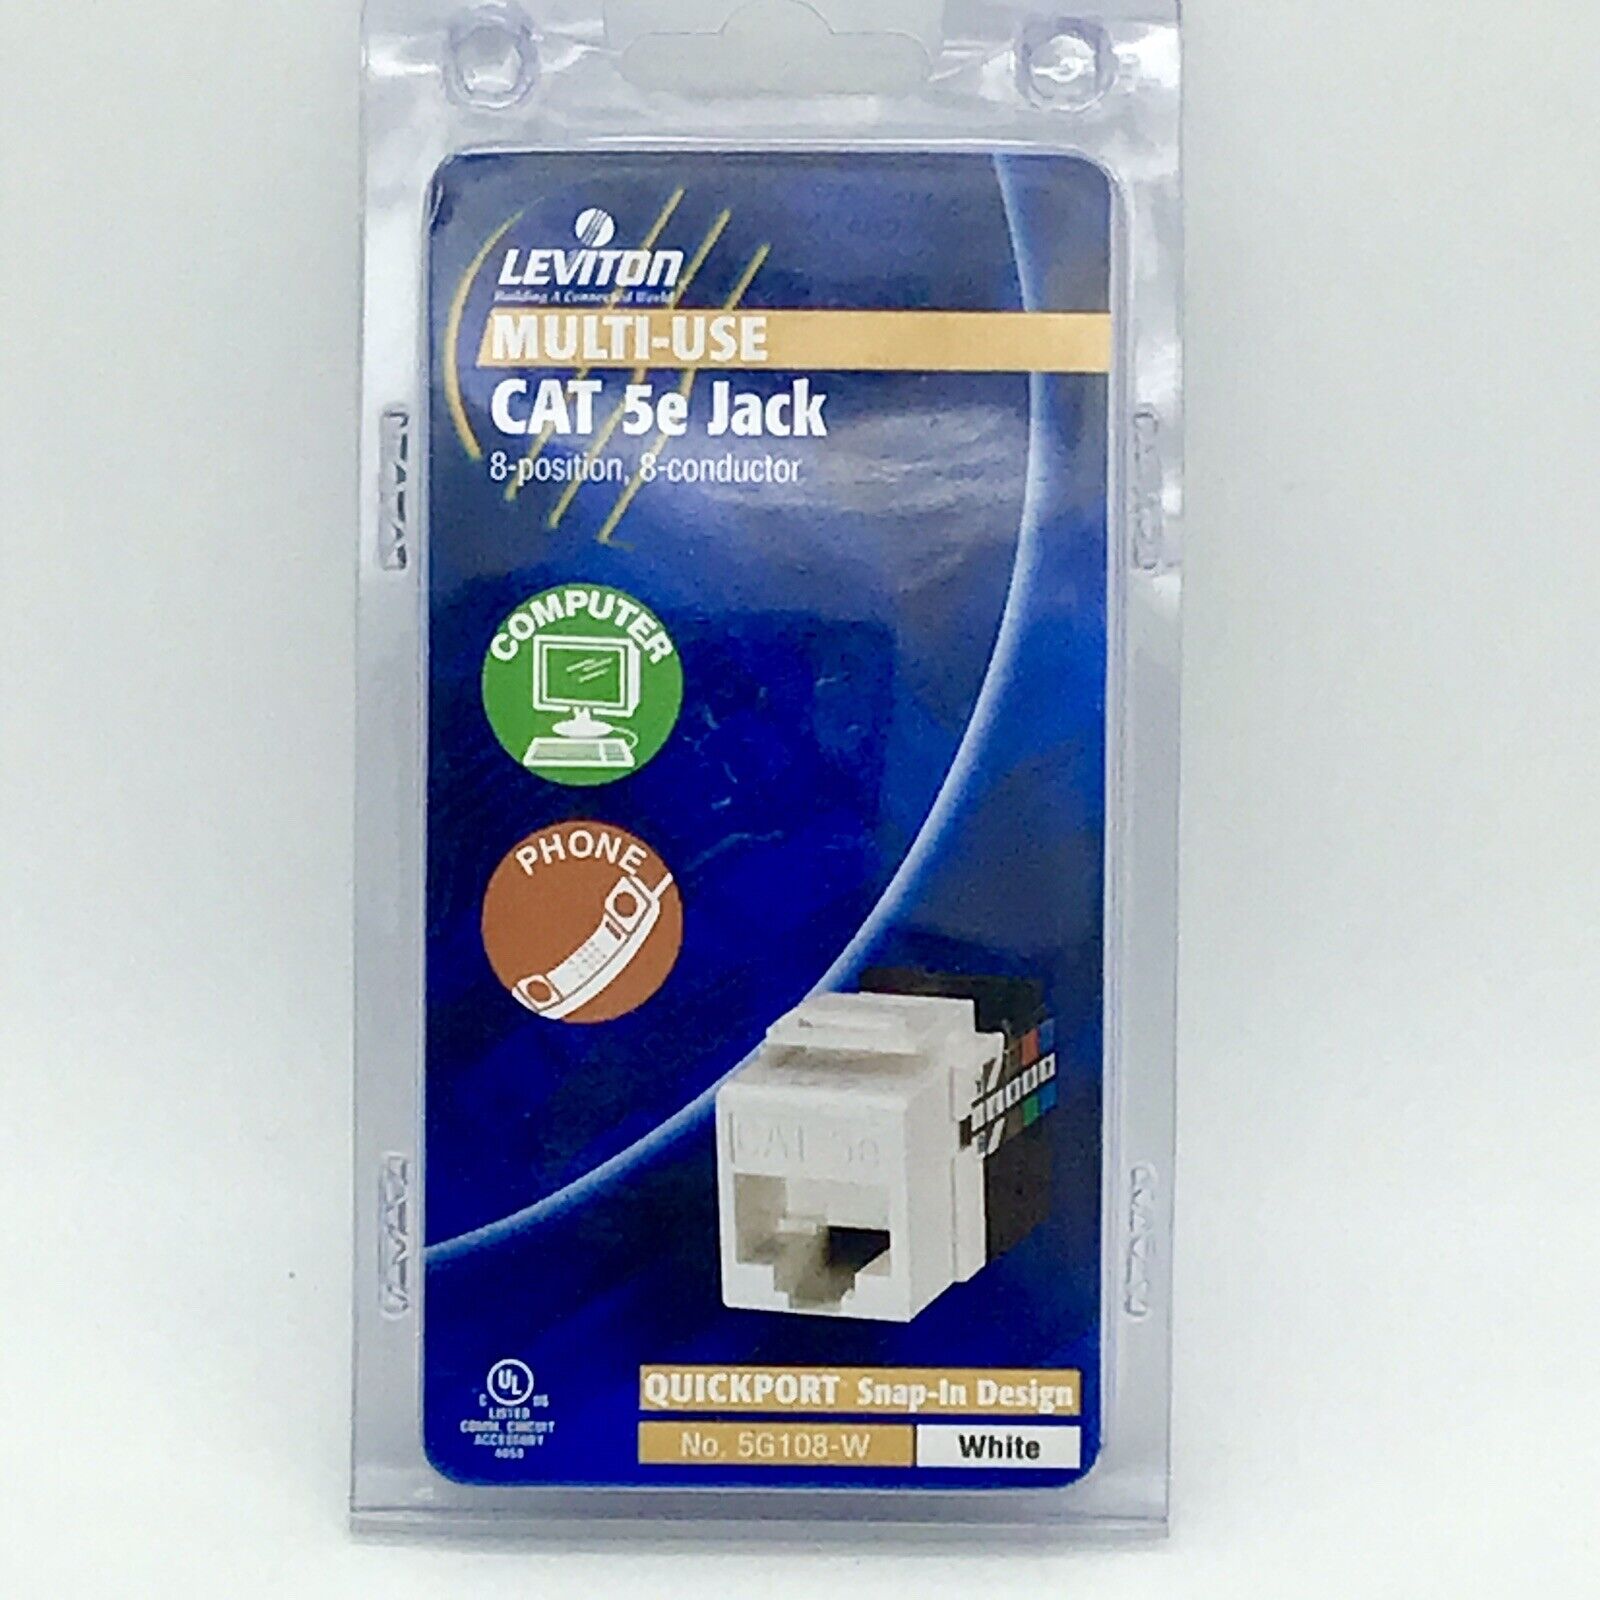 LEVITON JACK Quickport CAT 5e R06-5G108-W Multi-Use White Snap in Design NEW